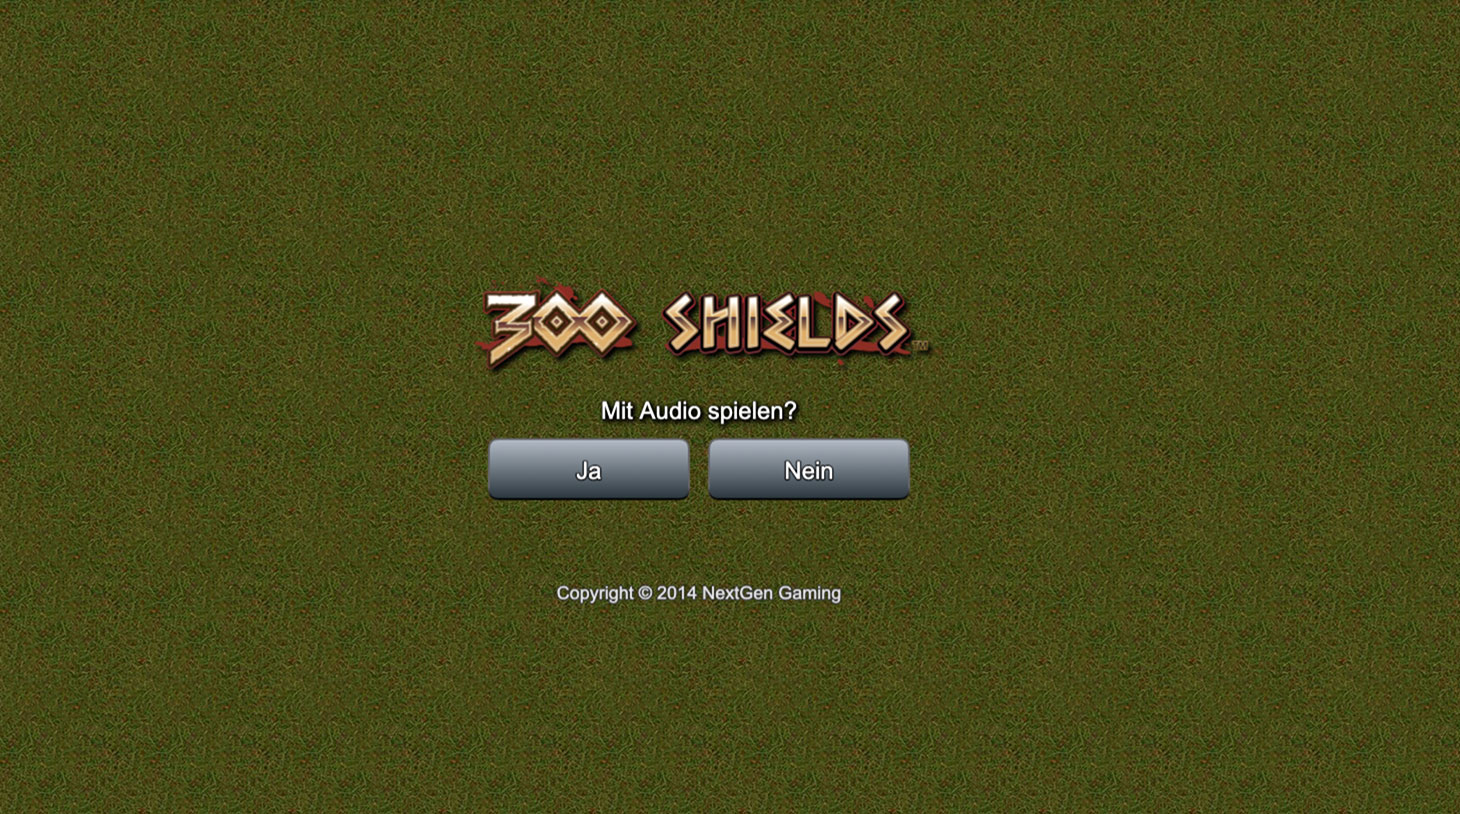 300 Shields spielautomat